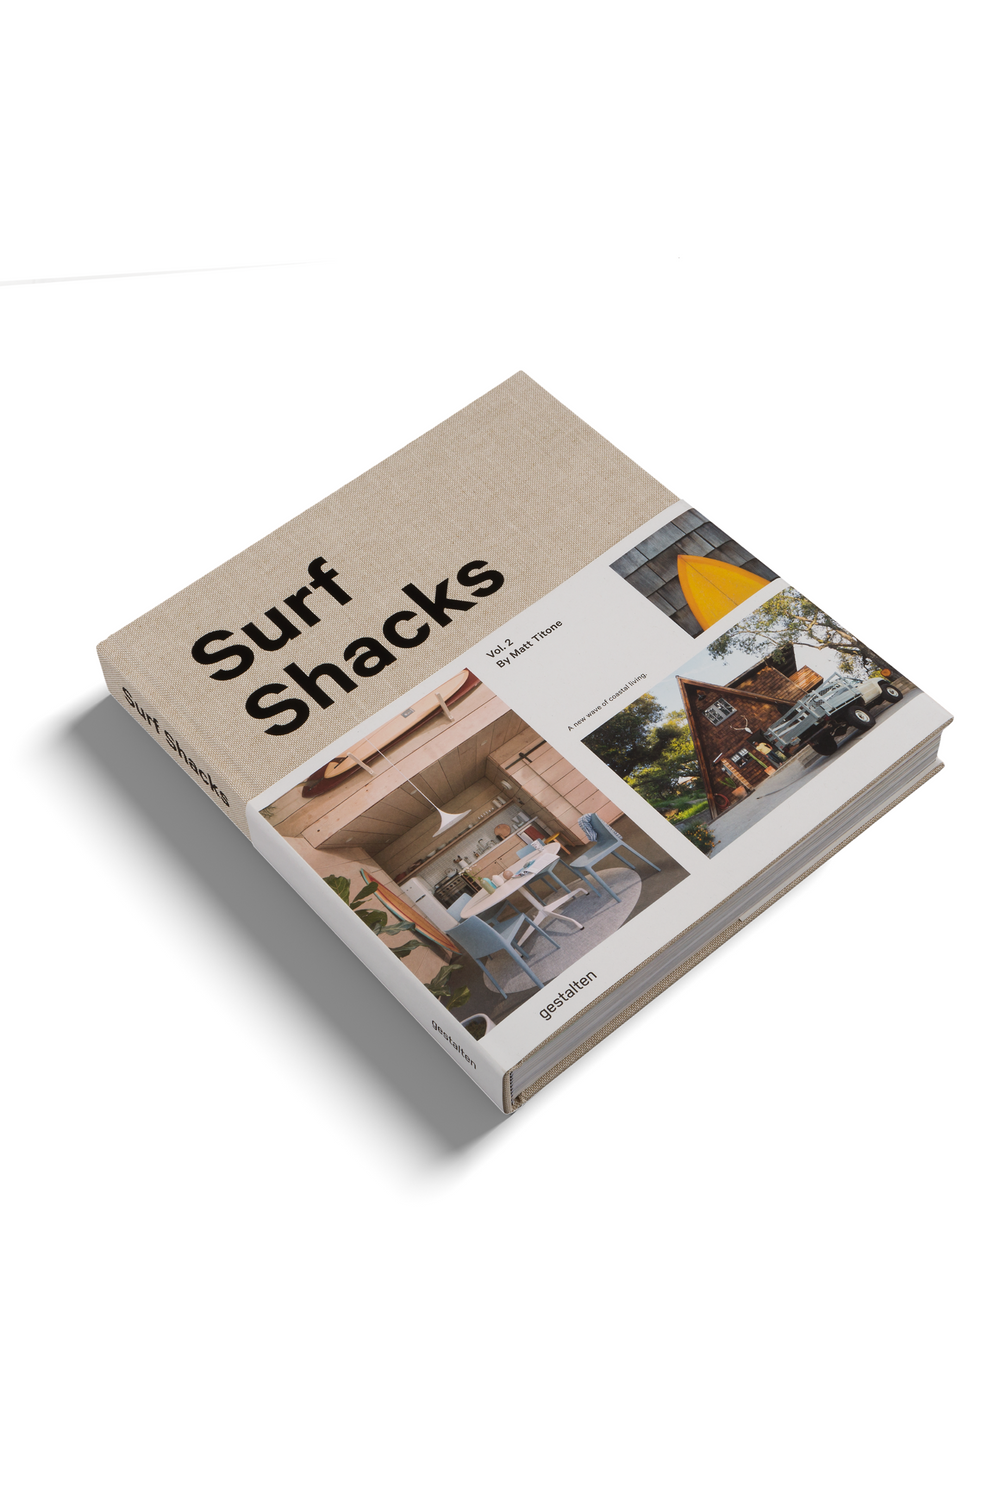 Surf Shacks Volume 02